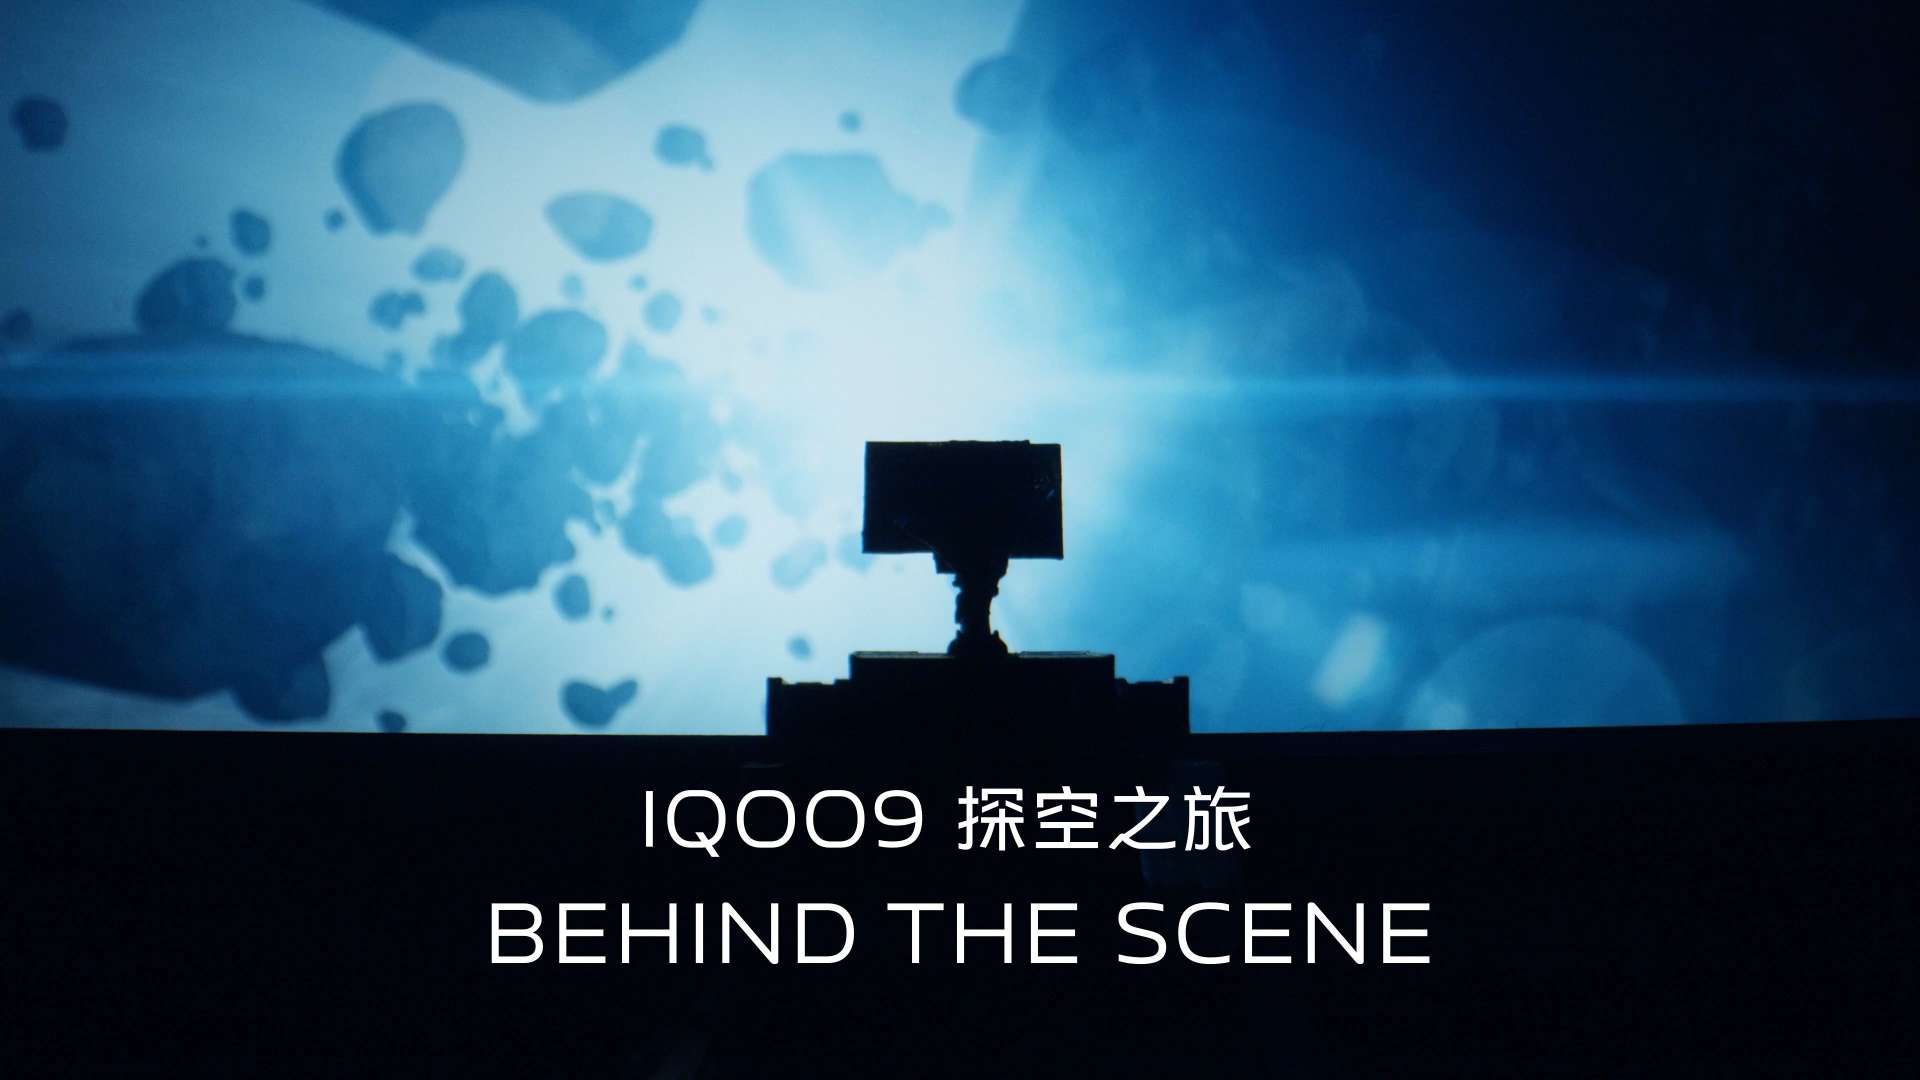 Behind the Scene iQOO 探空之旅